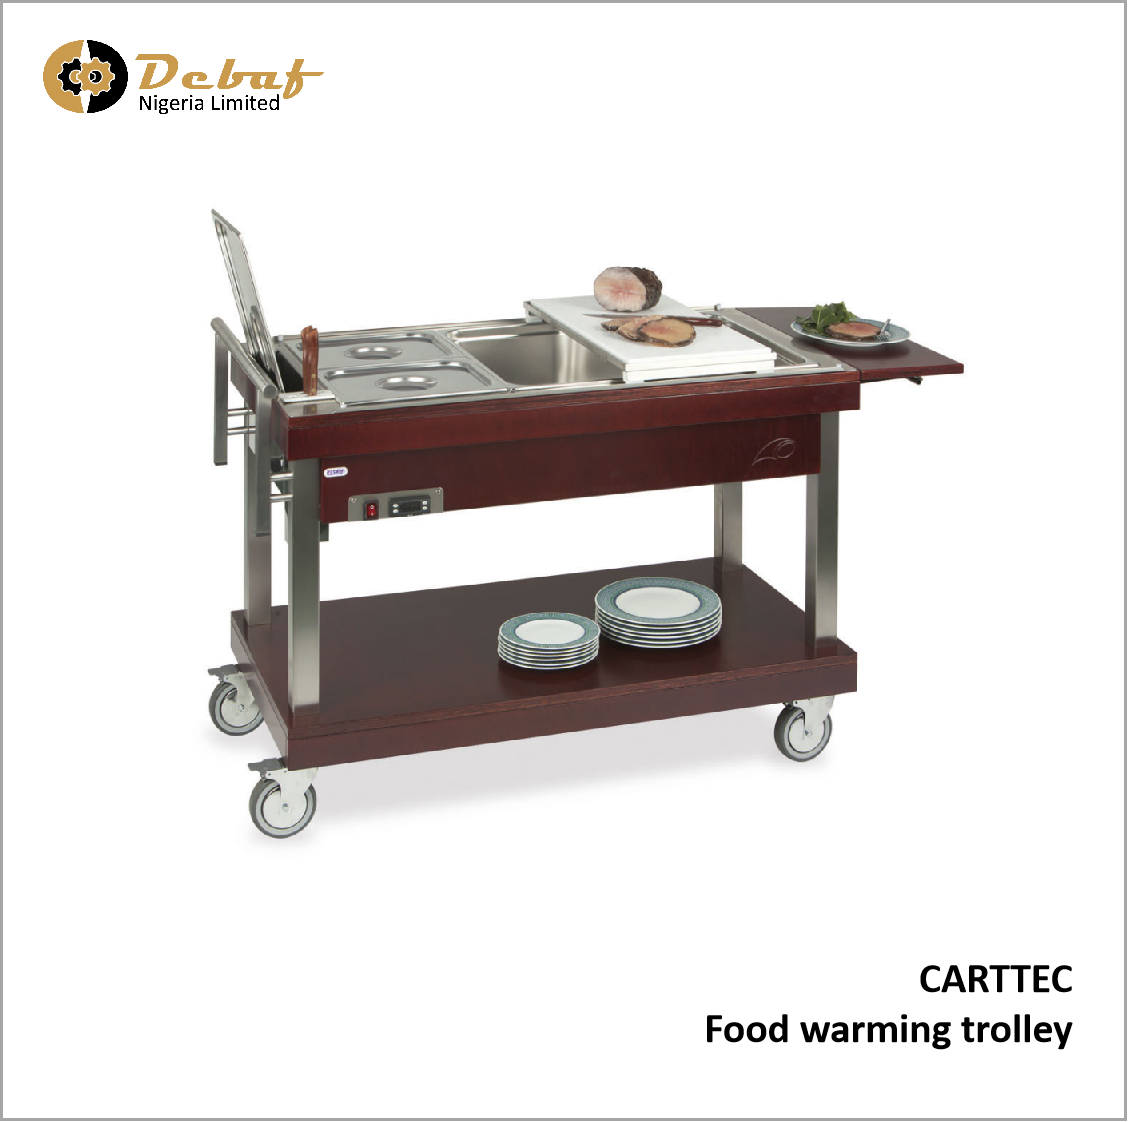 Debaf - CARTTEC Food warming trolley